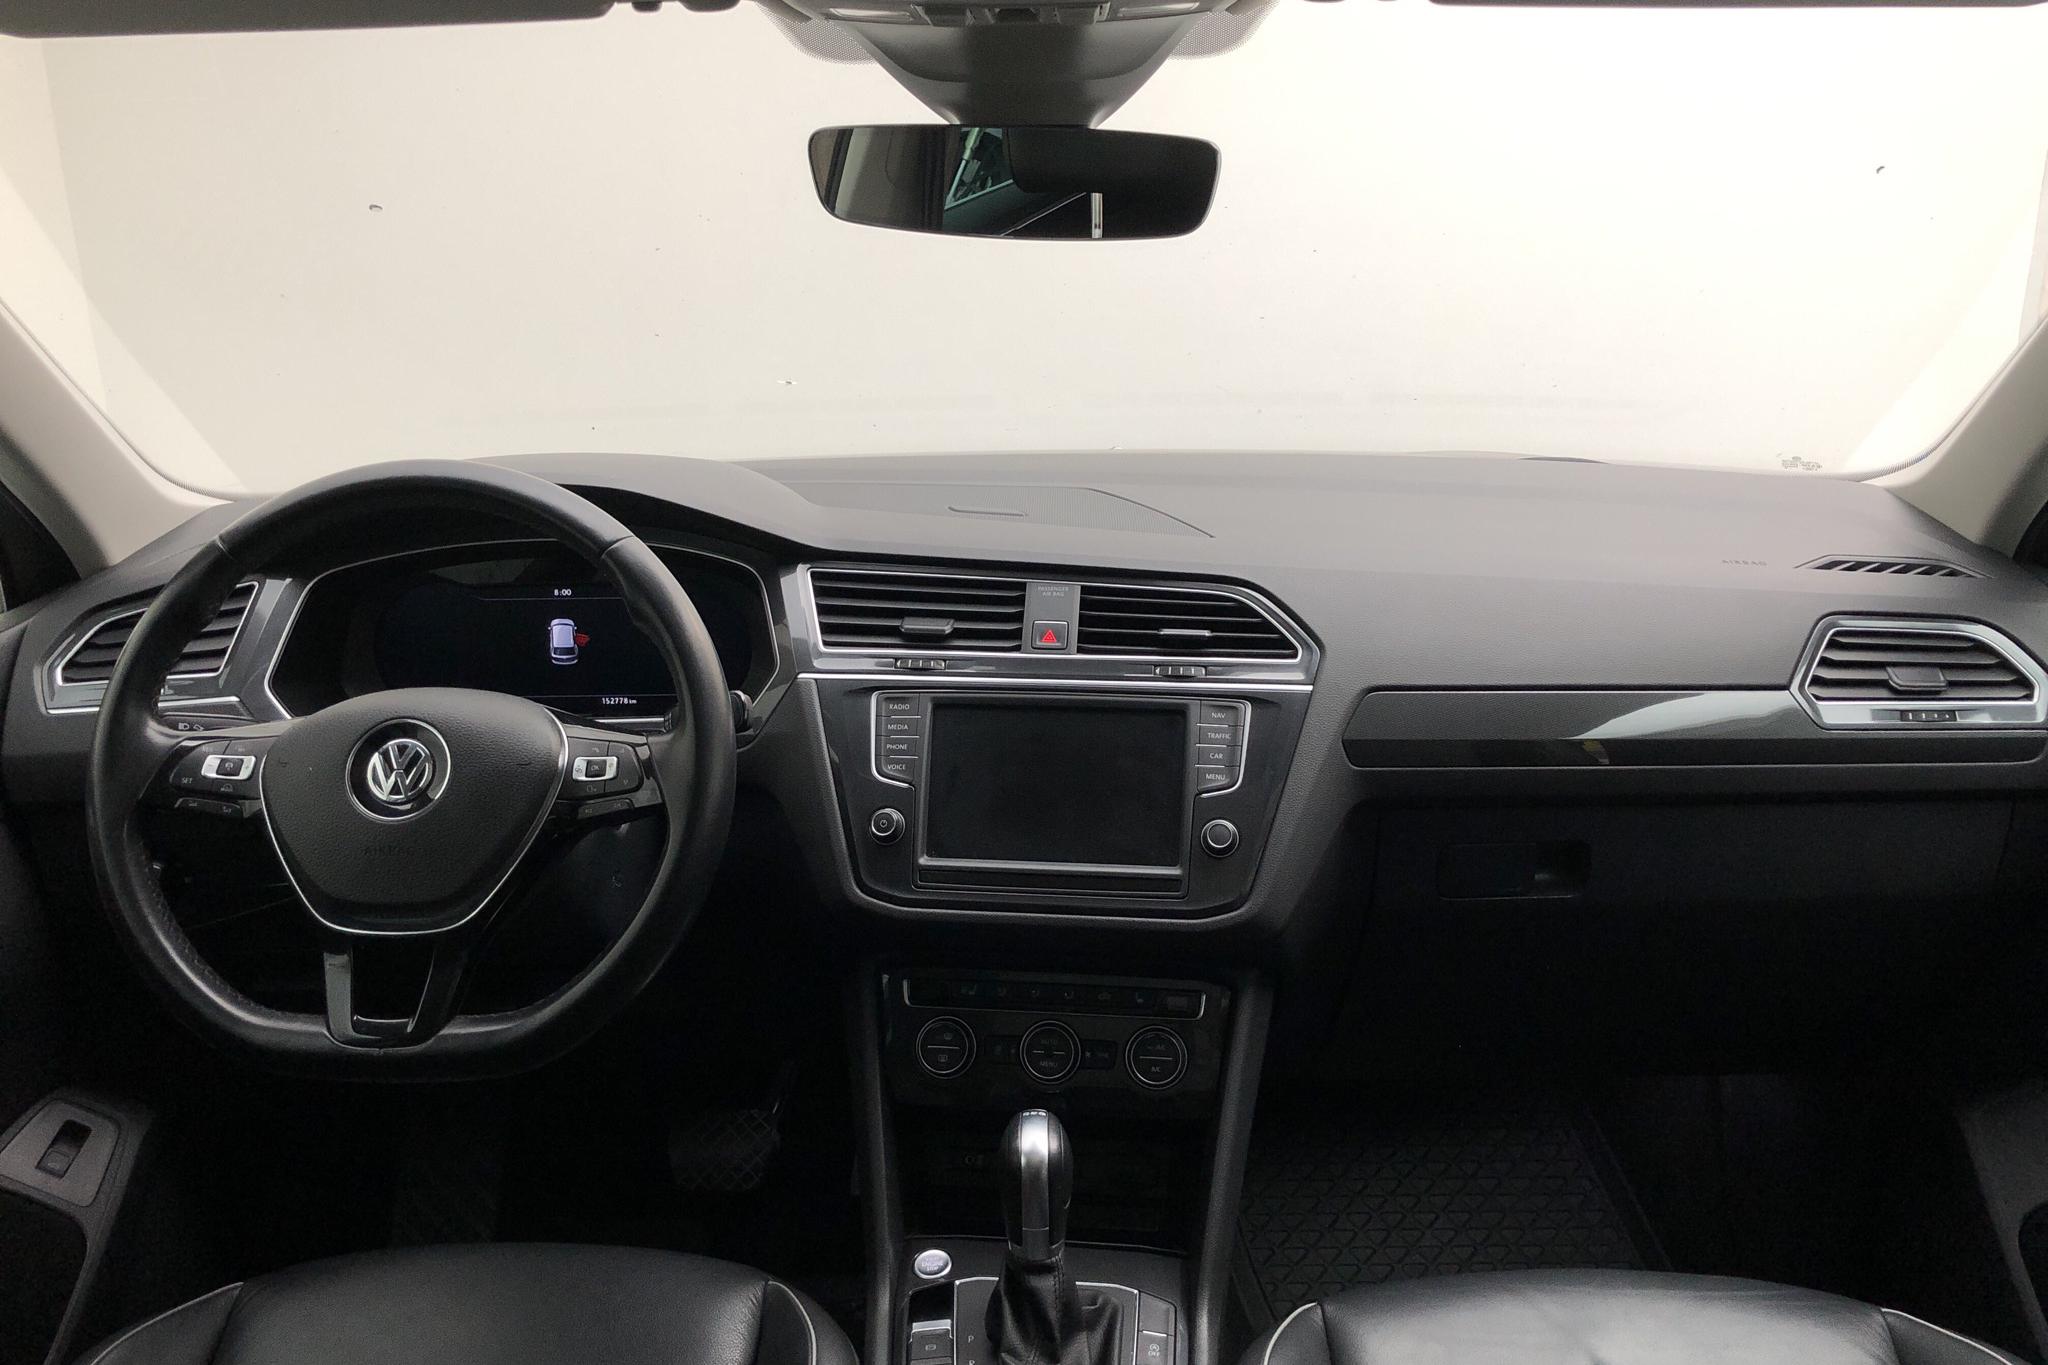 VW Tiguan 2.0 TDI 4MOTION (190hk) - 152 780 km - Automatic - Light Brown - 2016